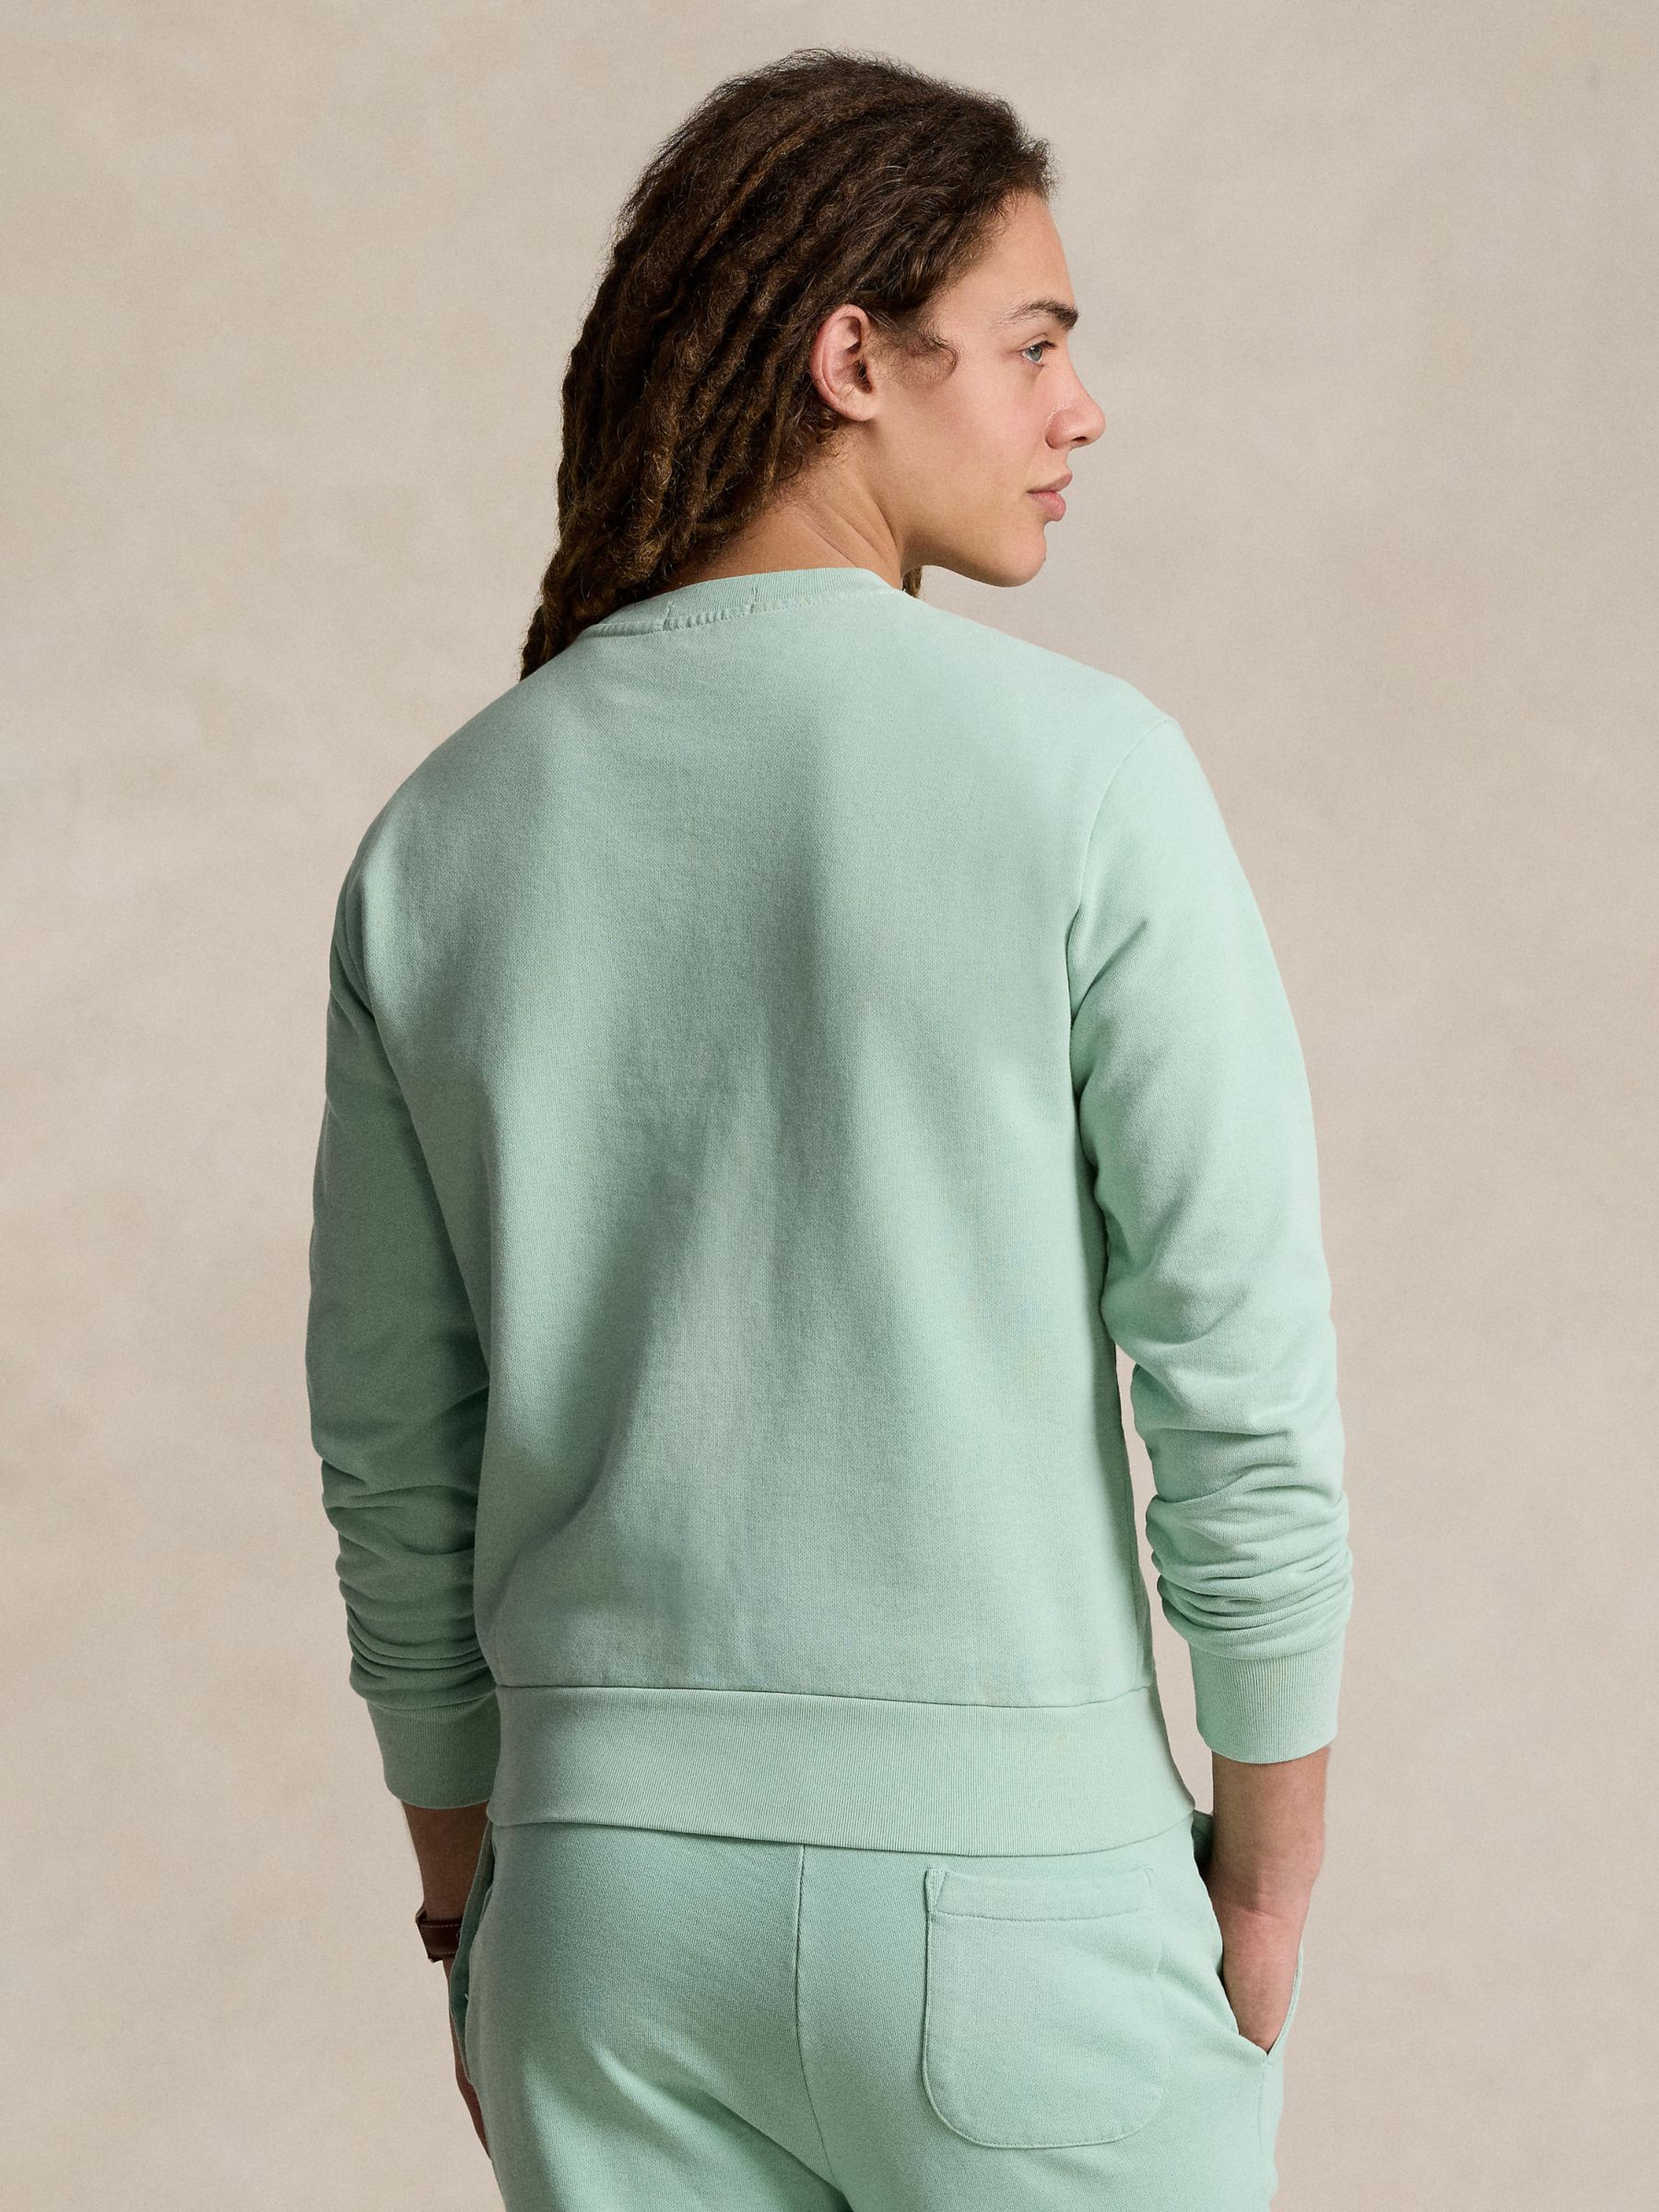 Ralph Lauren Loopback Cotton Fleece Sweatshirt, Celadon, XXL